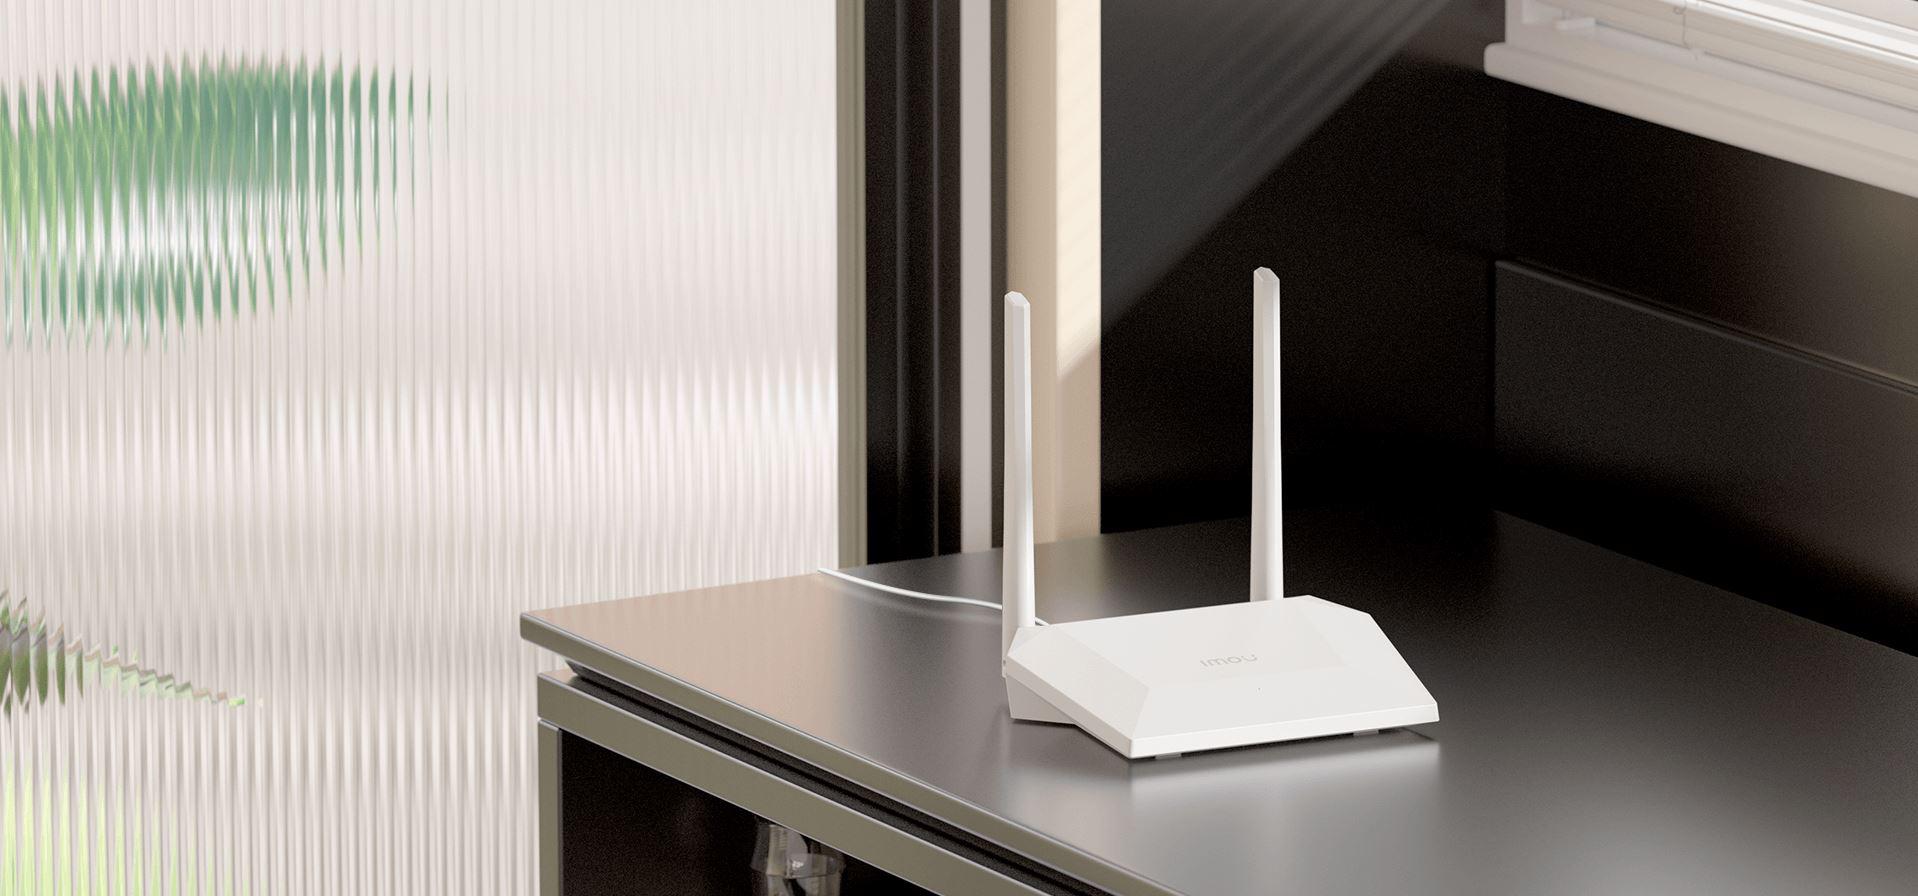 Router Imou HR300 Wi-Fi 300Mbps - najważniejsze cechy: